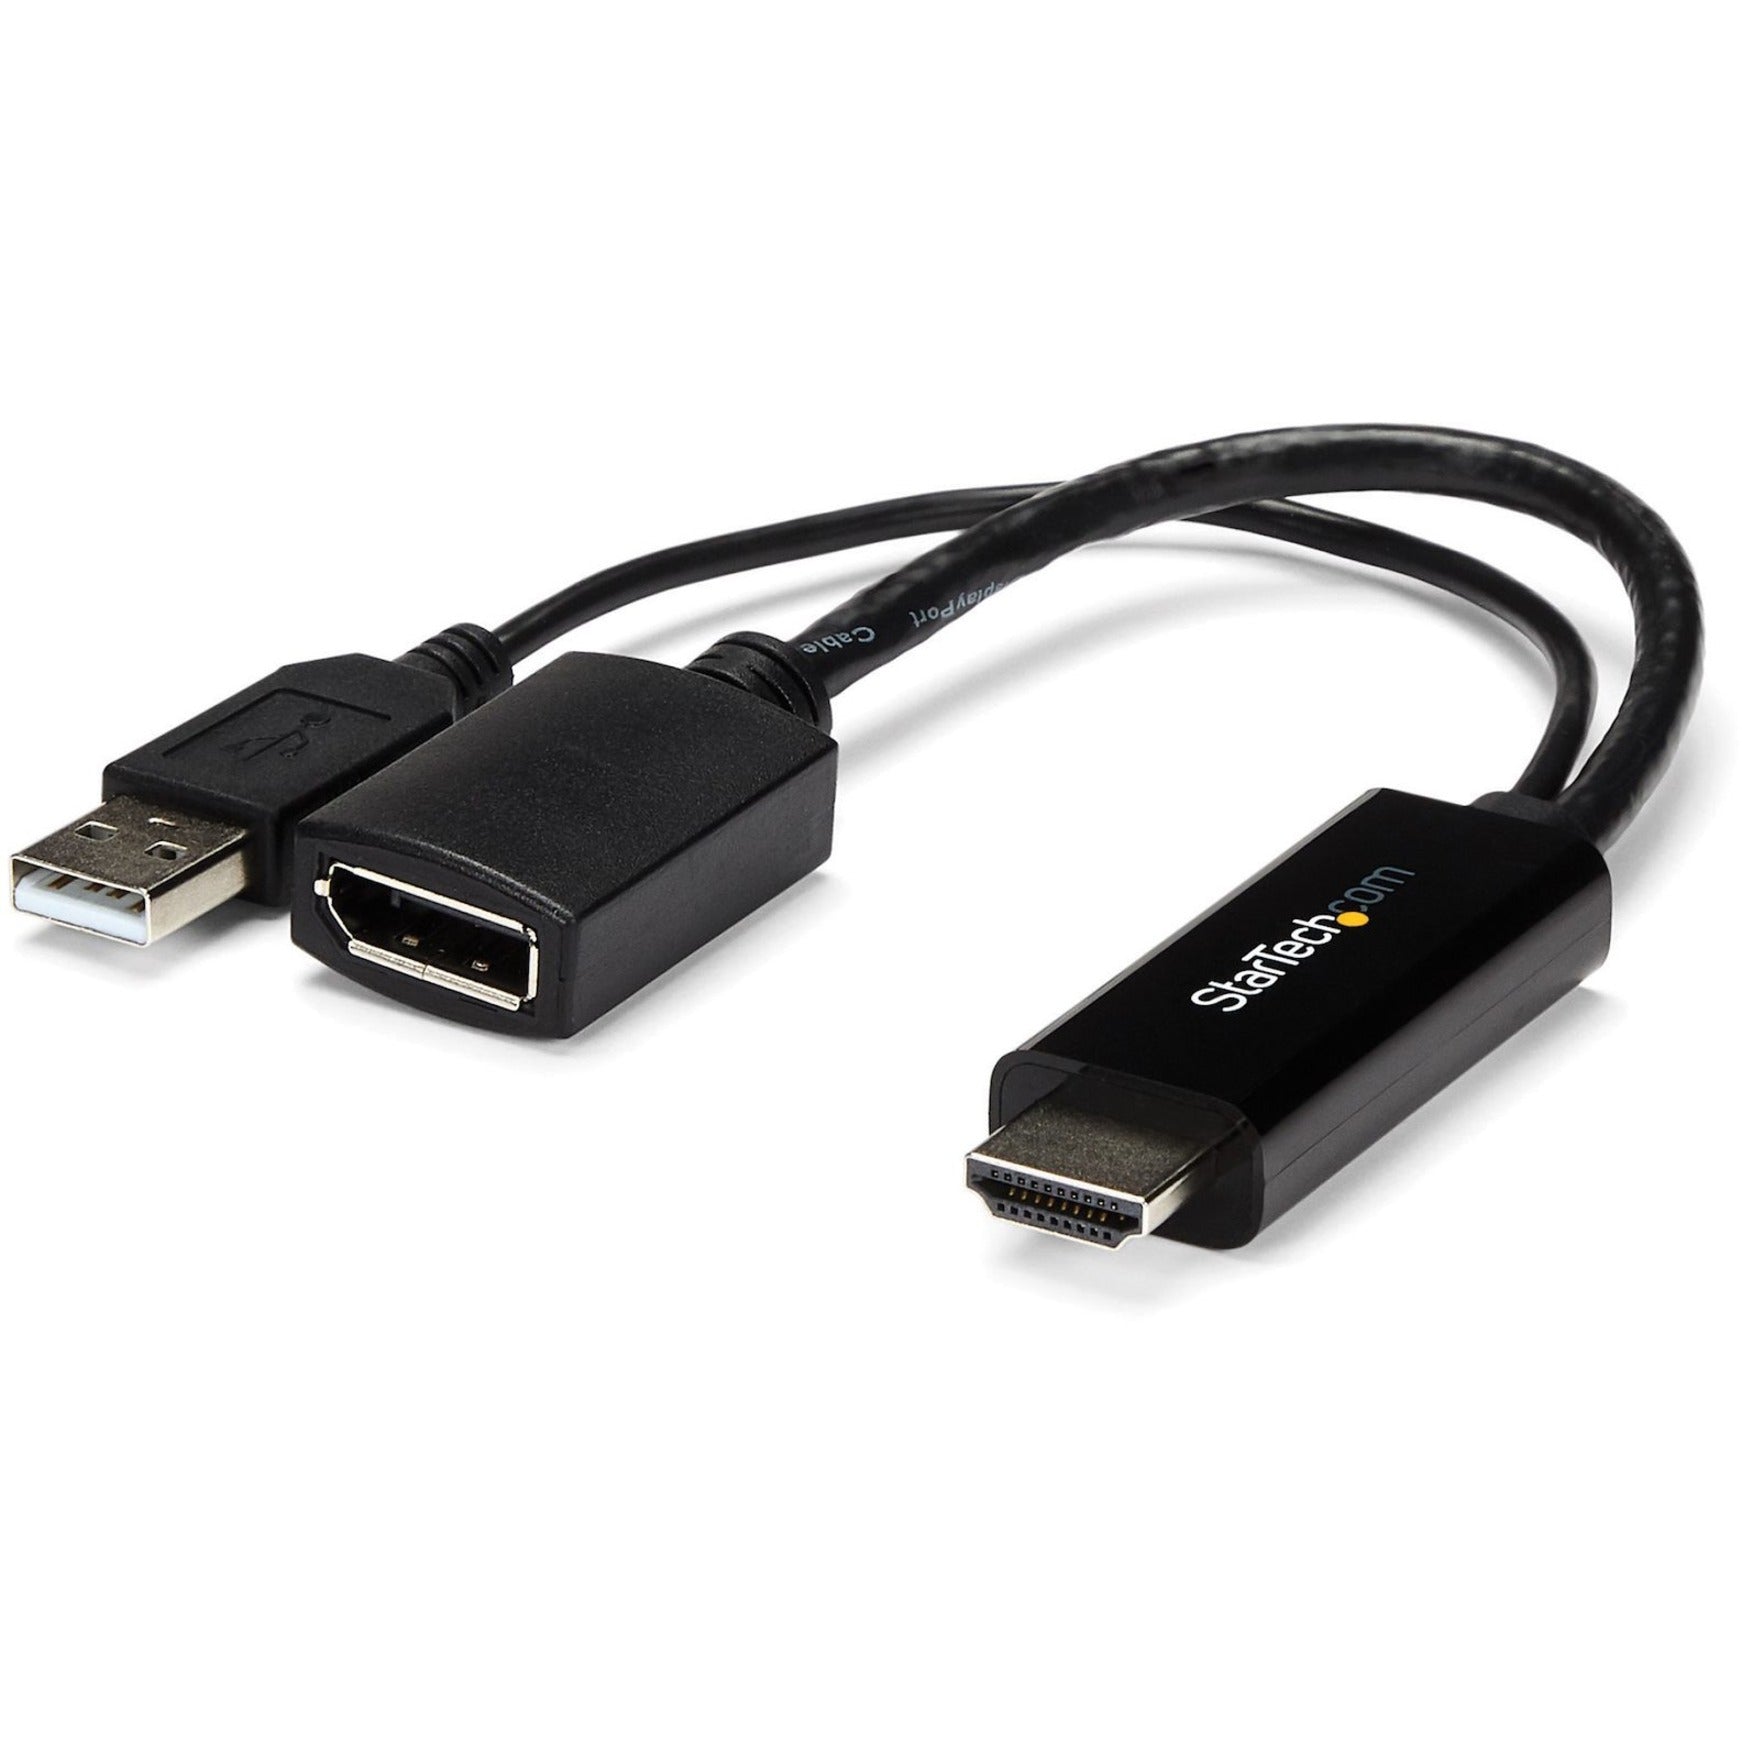 星磁科技 HD2DP HDMI 到 DisplayPort 转换器- HDMI 到 DP 适配器与 USB 电源 - 4K，易插即用视频适配器 星磁科技 星磁